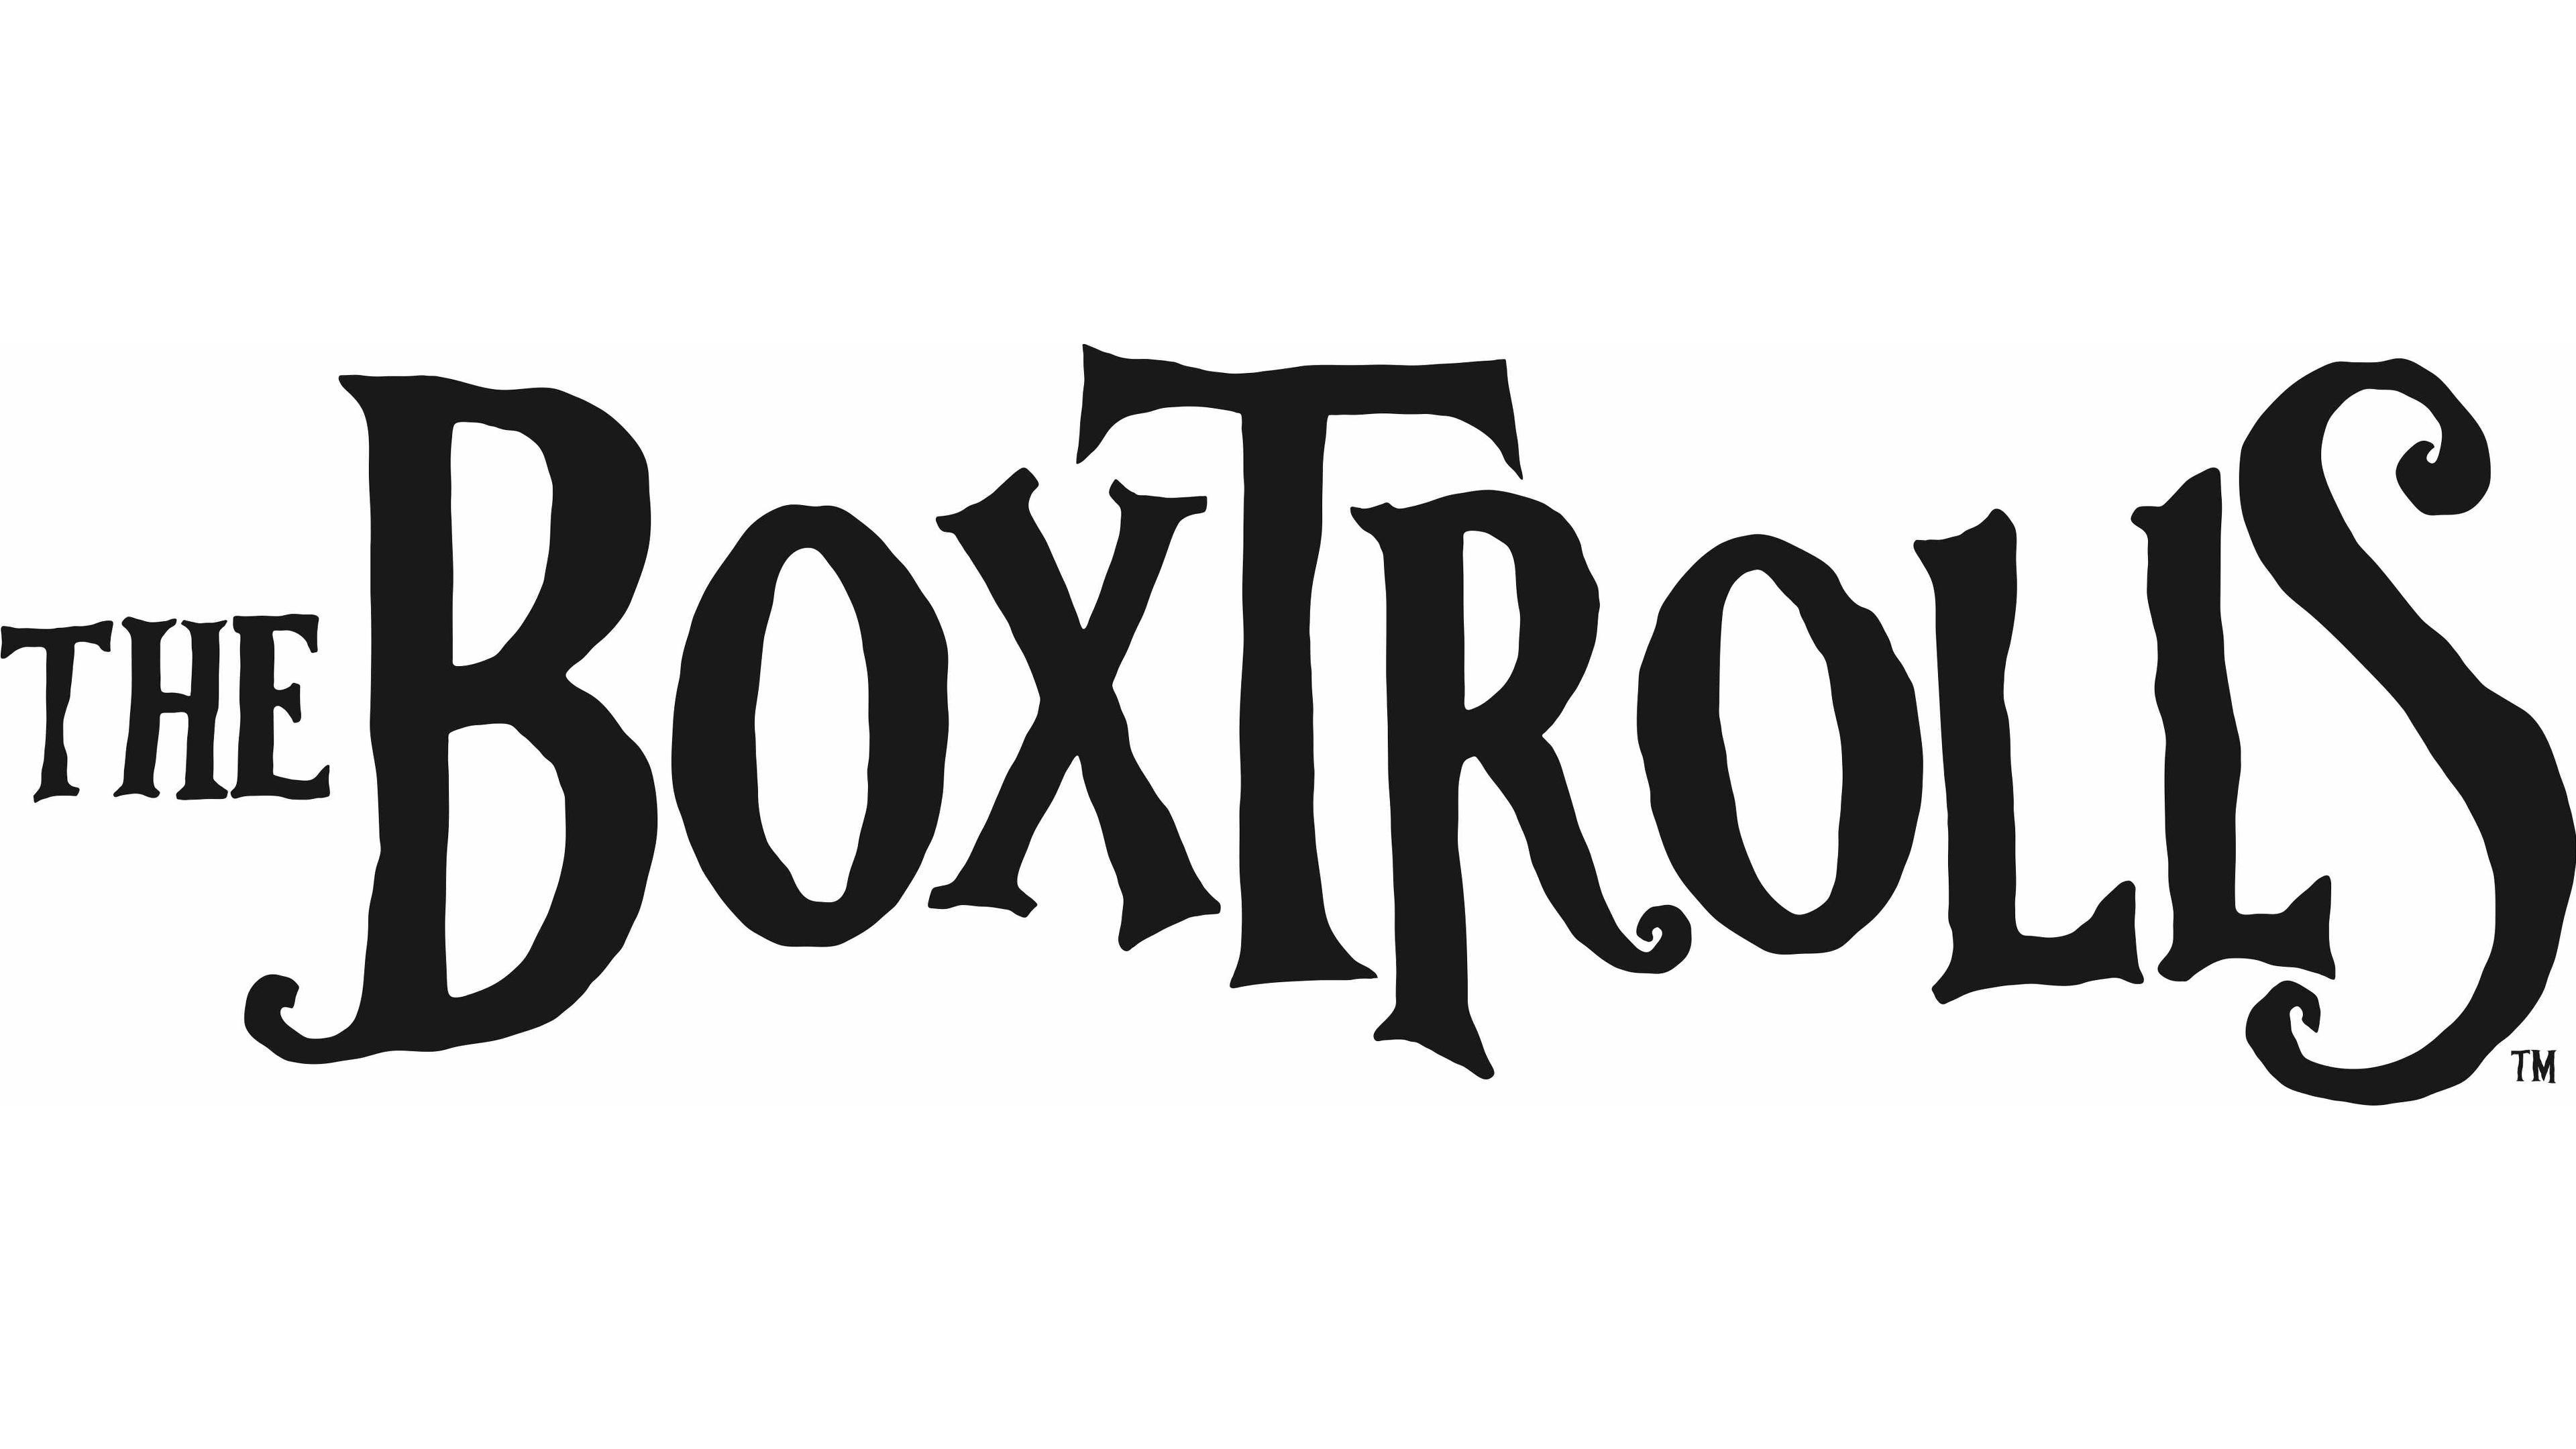 The Boxtrolls logo HD desktop wallpaper, Widescreen, High